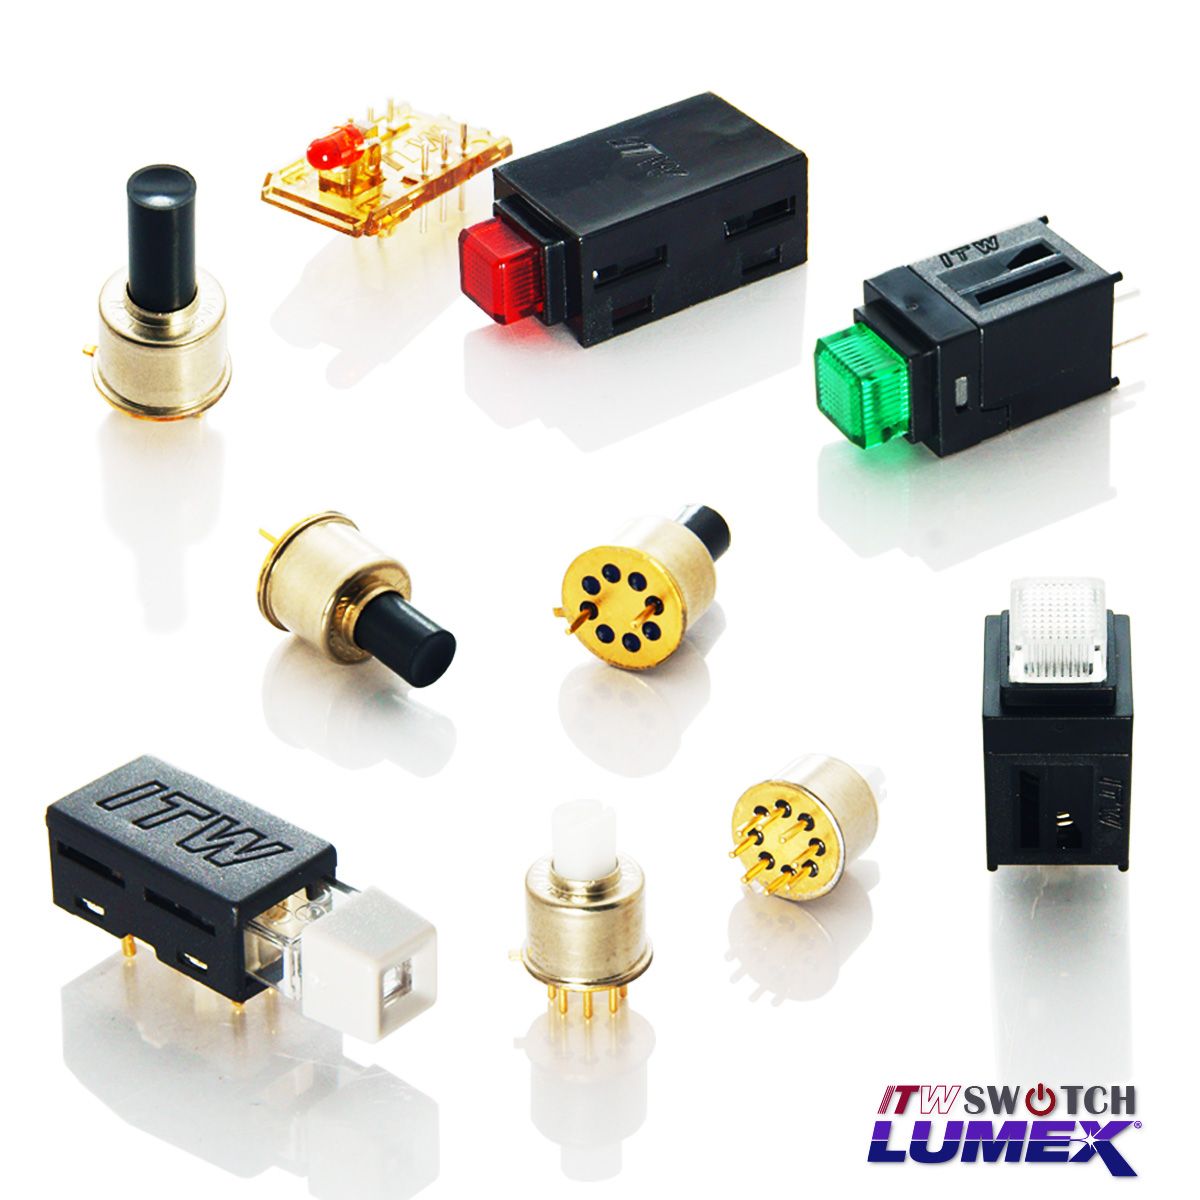 ITW Lumex Switchfornece interruptores de botão iluminados por LED em miniatura para aplicações PCBA.